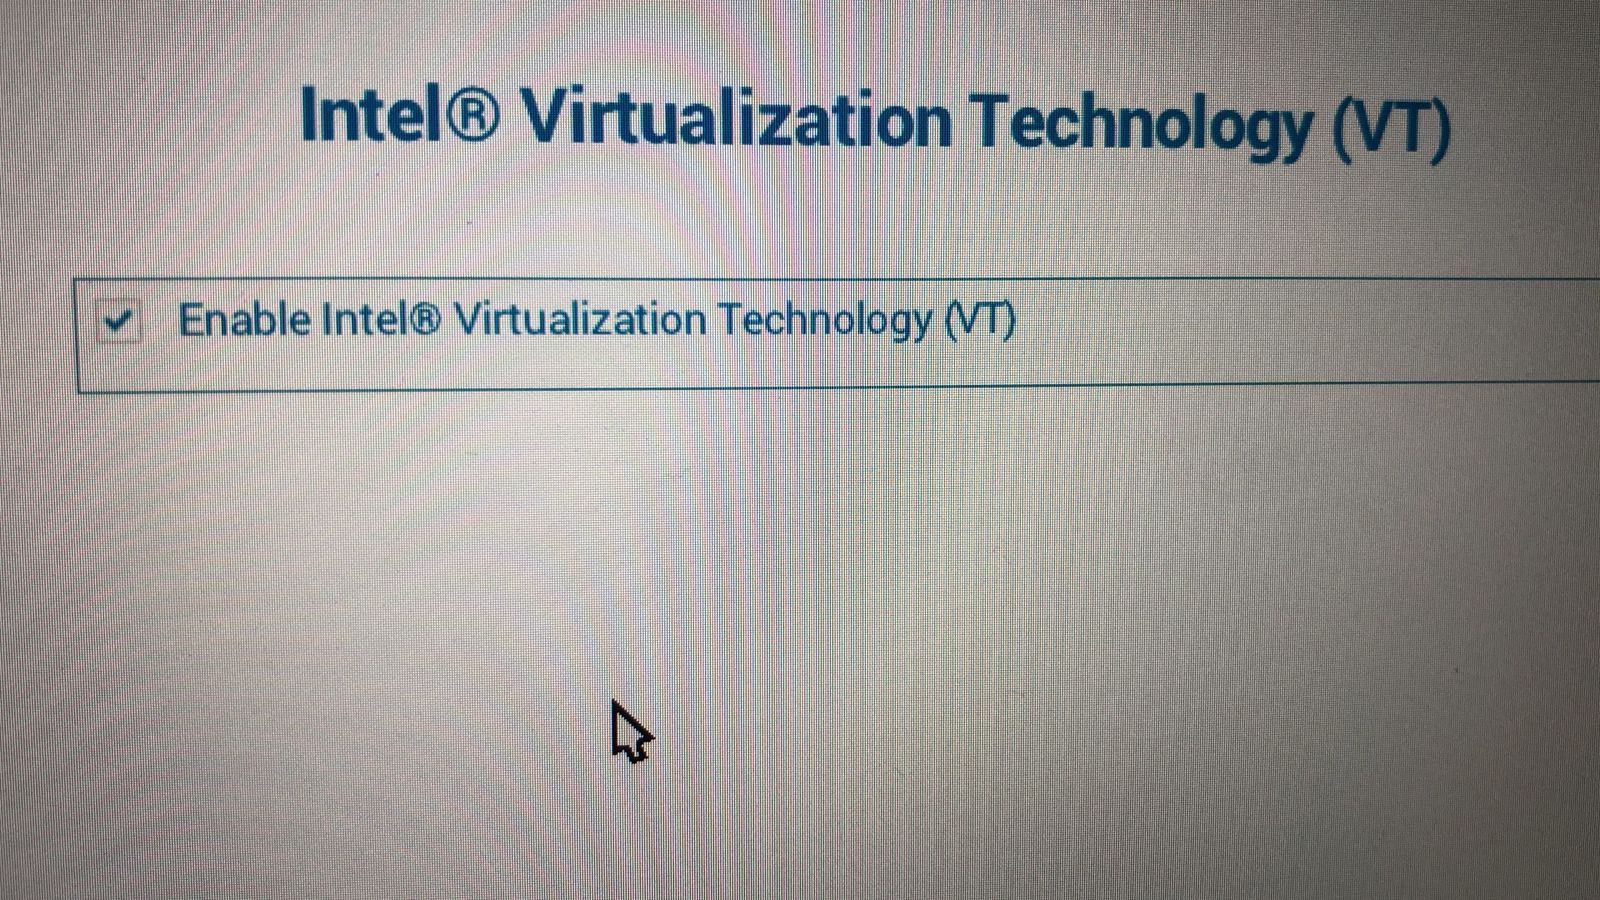 在戴尔笔记本电脑的 BIOS 设置中禁用 Intel 虚拟化技术选项